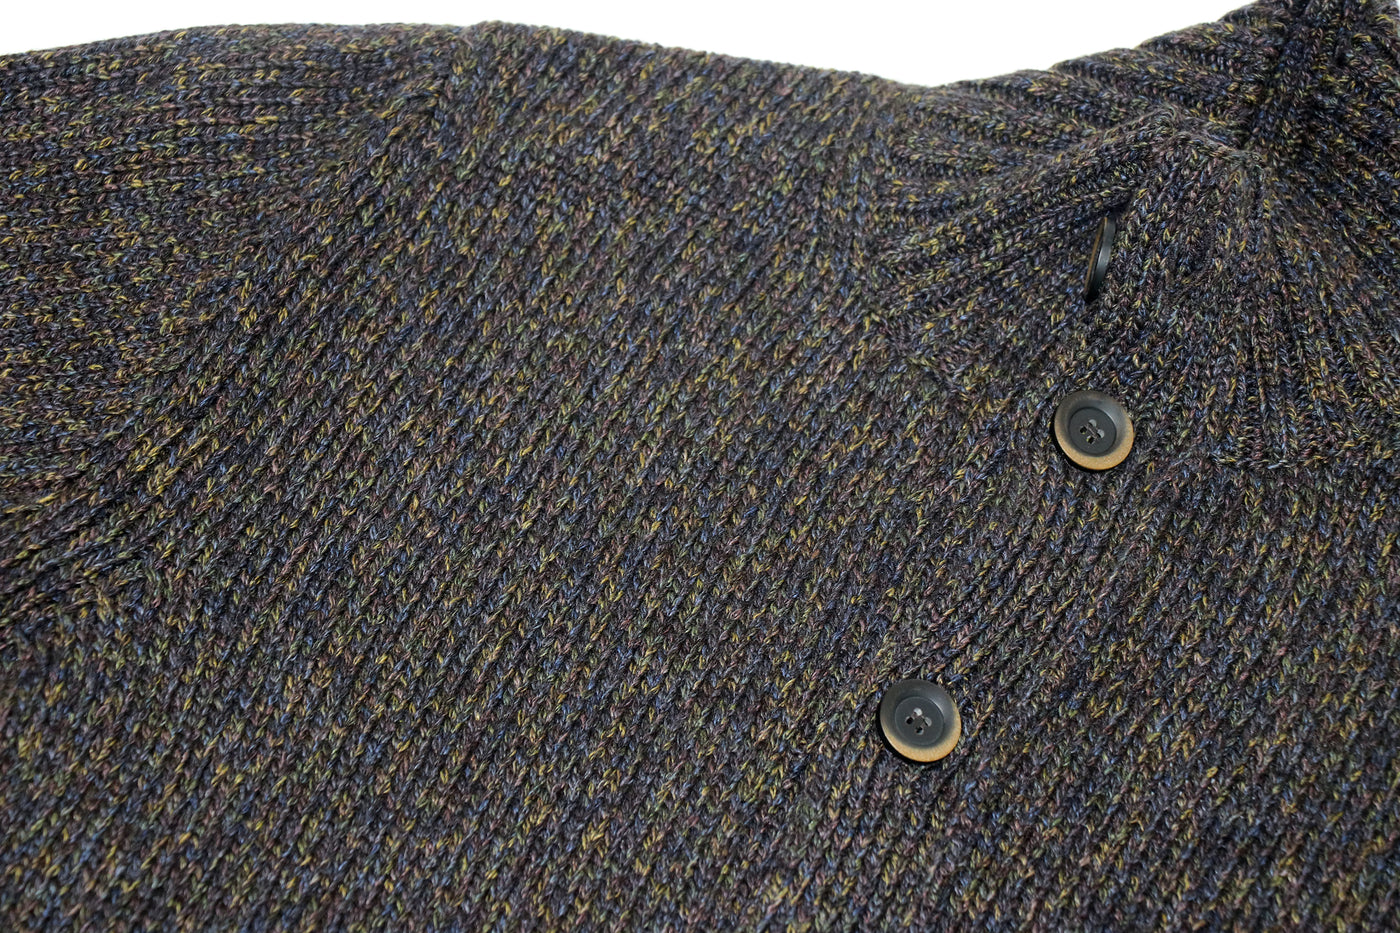 Maglia Classica Button Front Sweater